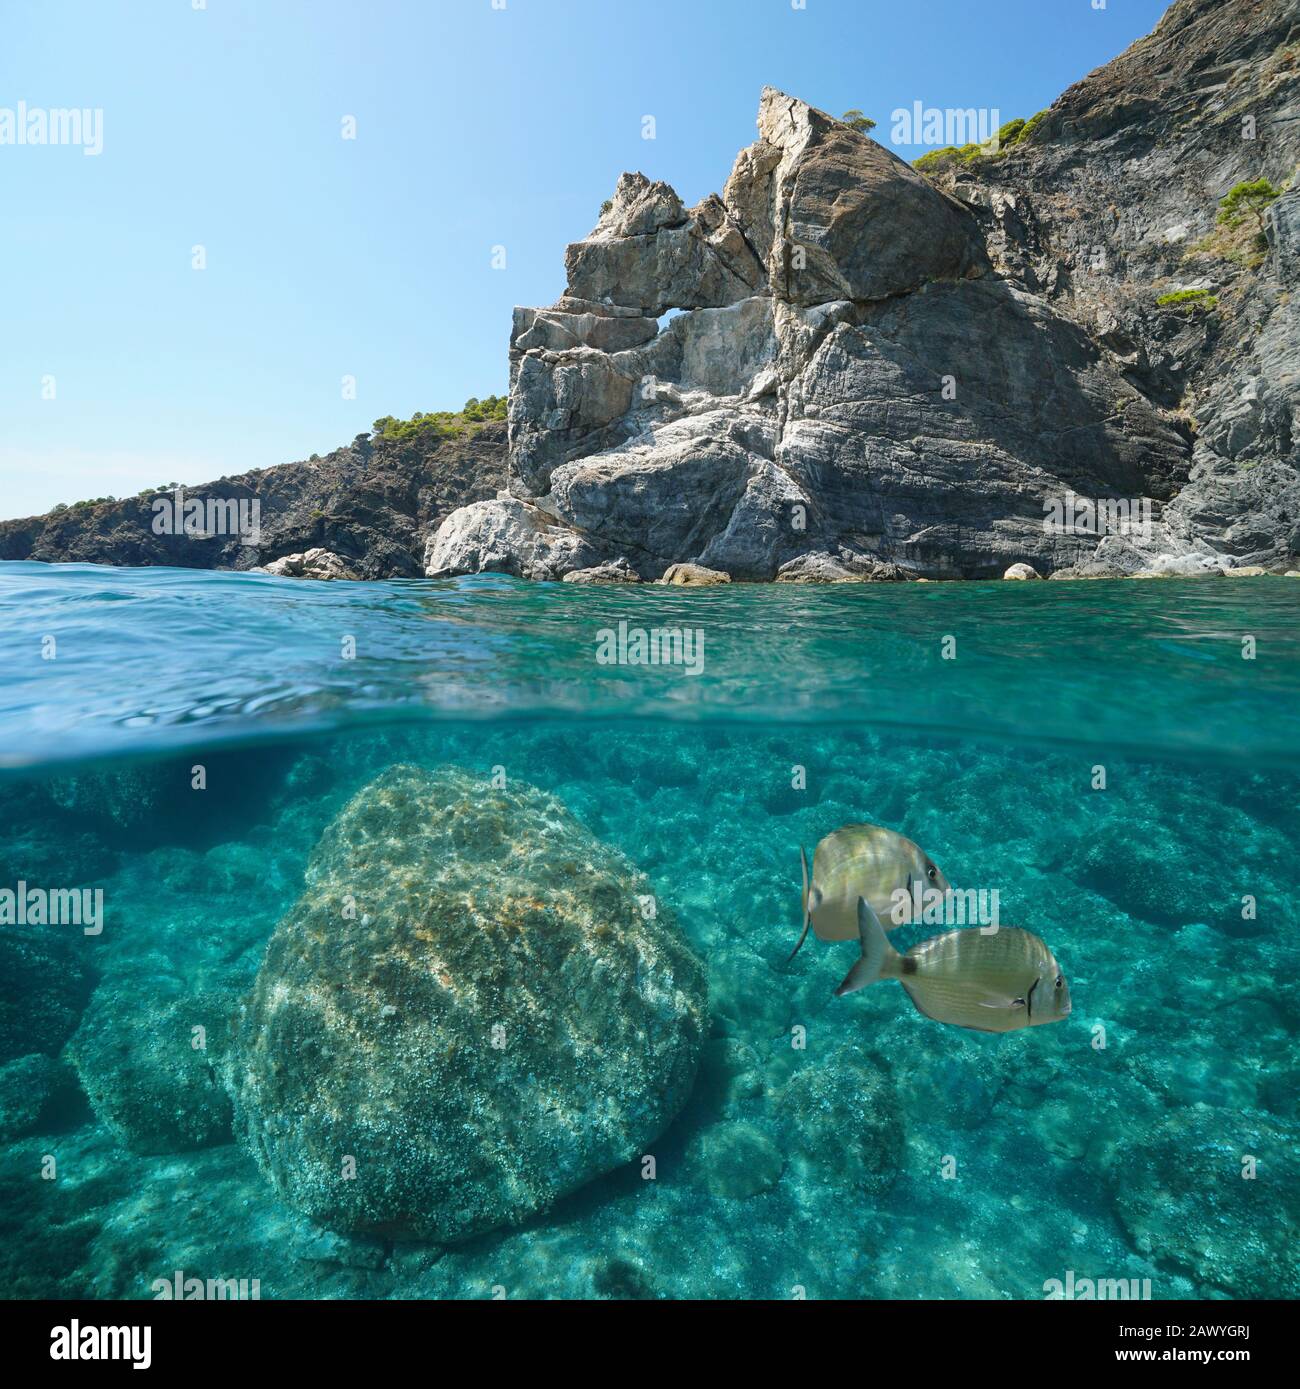 Mer Méditerranée Seascape, côte rocheuse avec poissons sous l'eau, vue partagée sur et sous la surface de l'eau, Espagne, Costa Brava, Colera, Catalogne Banque D'Images